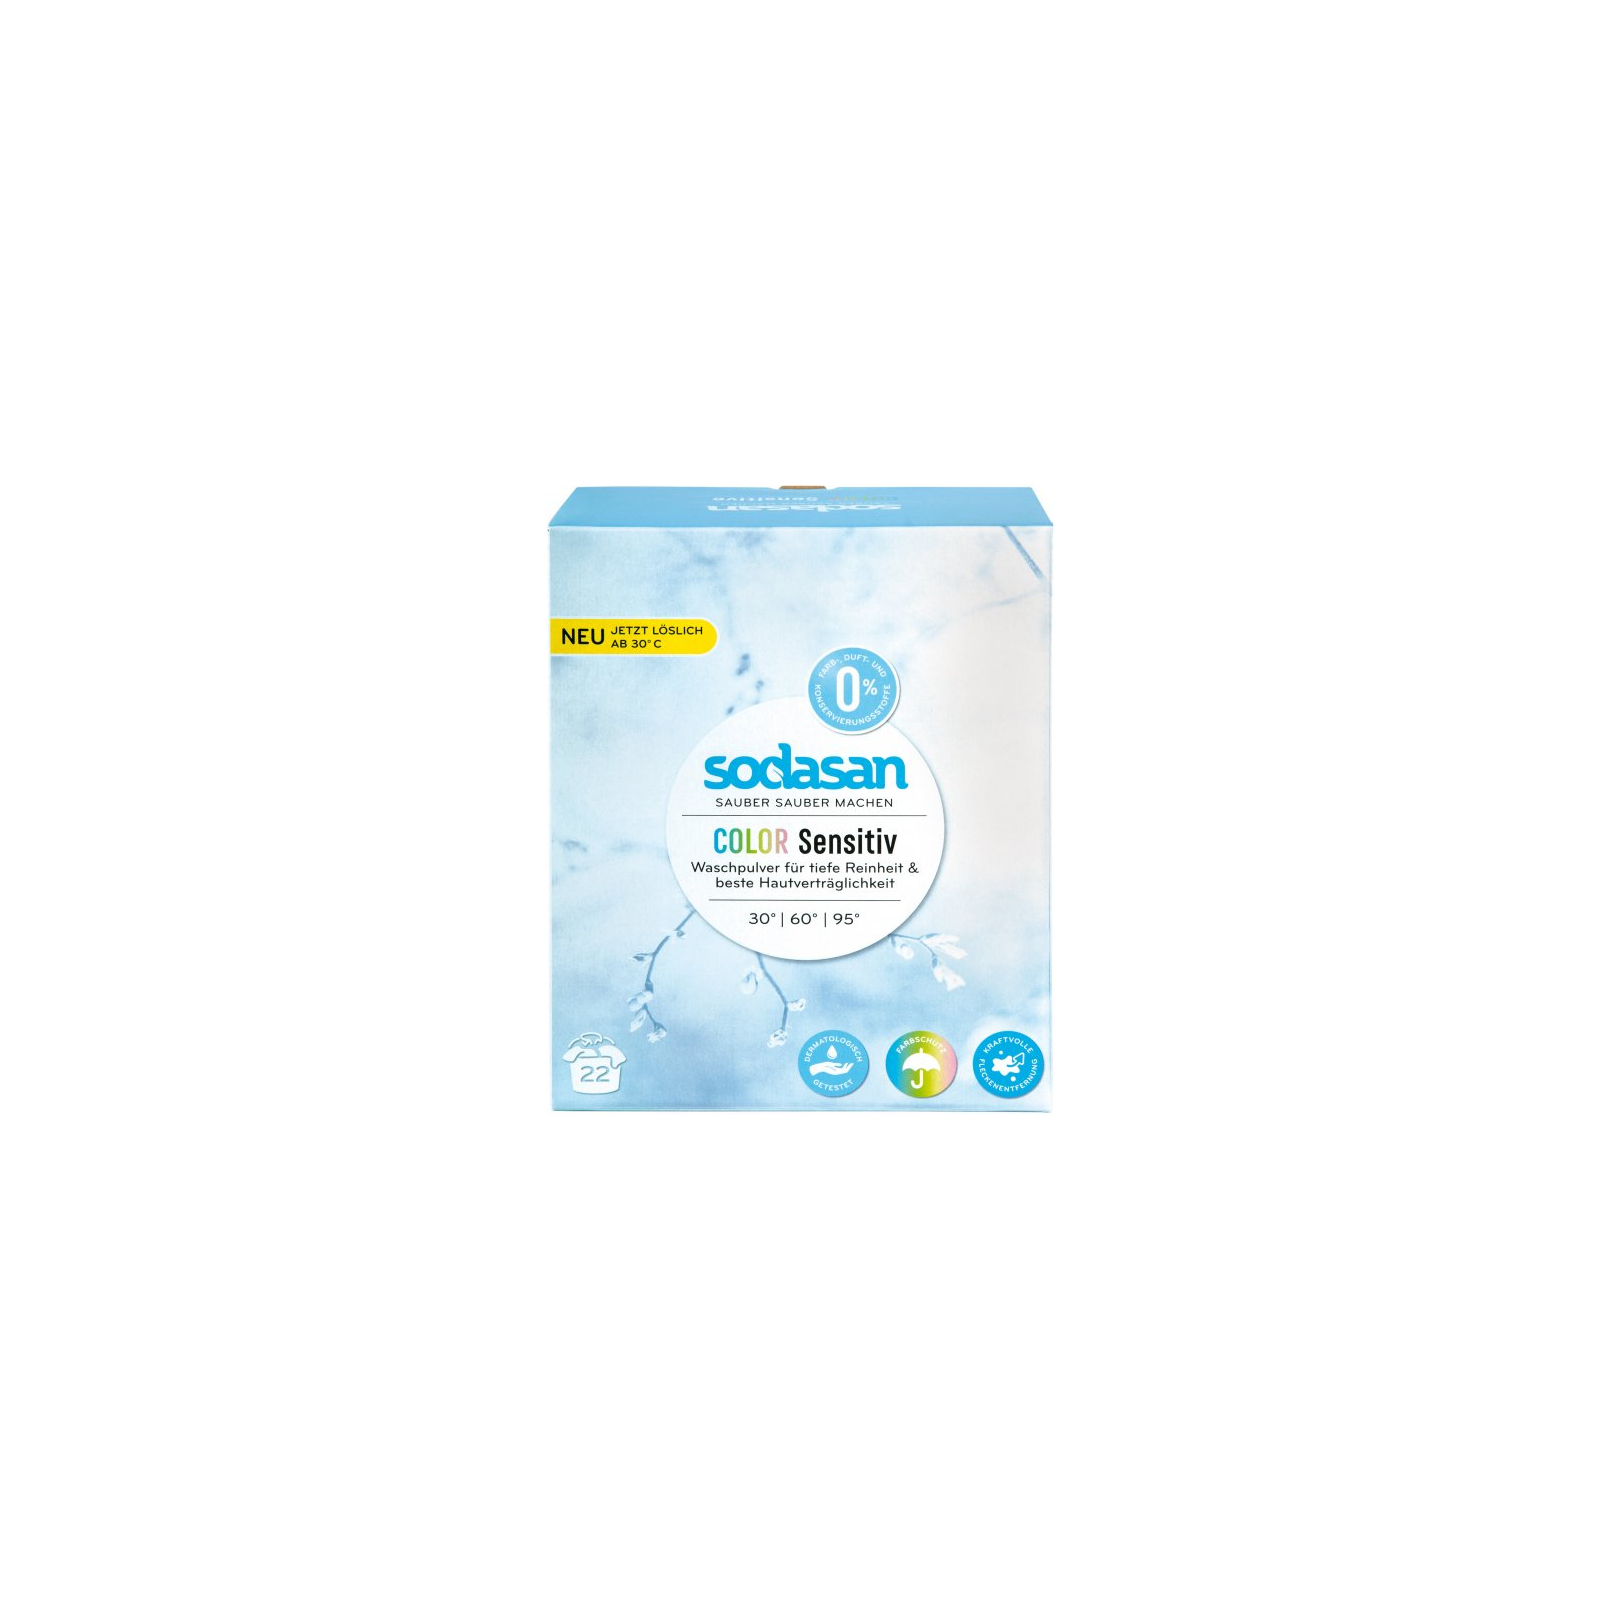 Стиральный порошок Sodasan Comfort Sensitiv 1 кг (4019886050807)